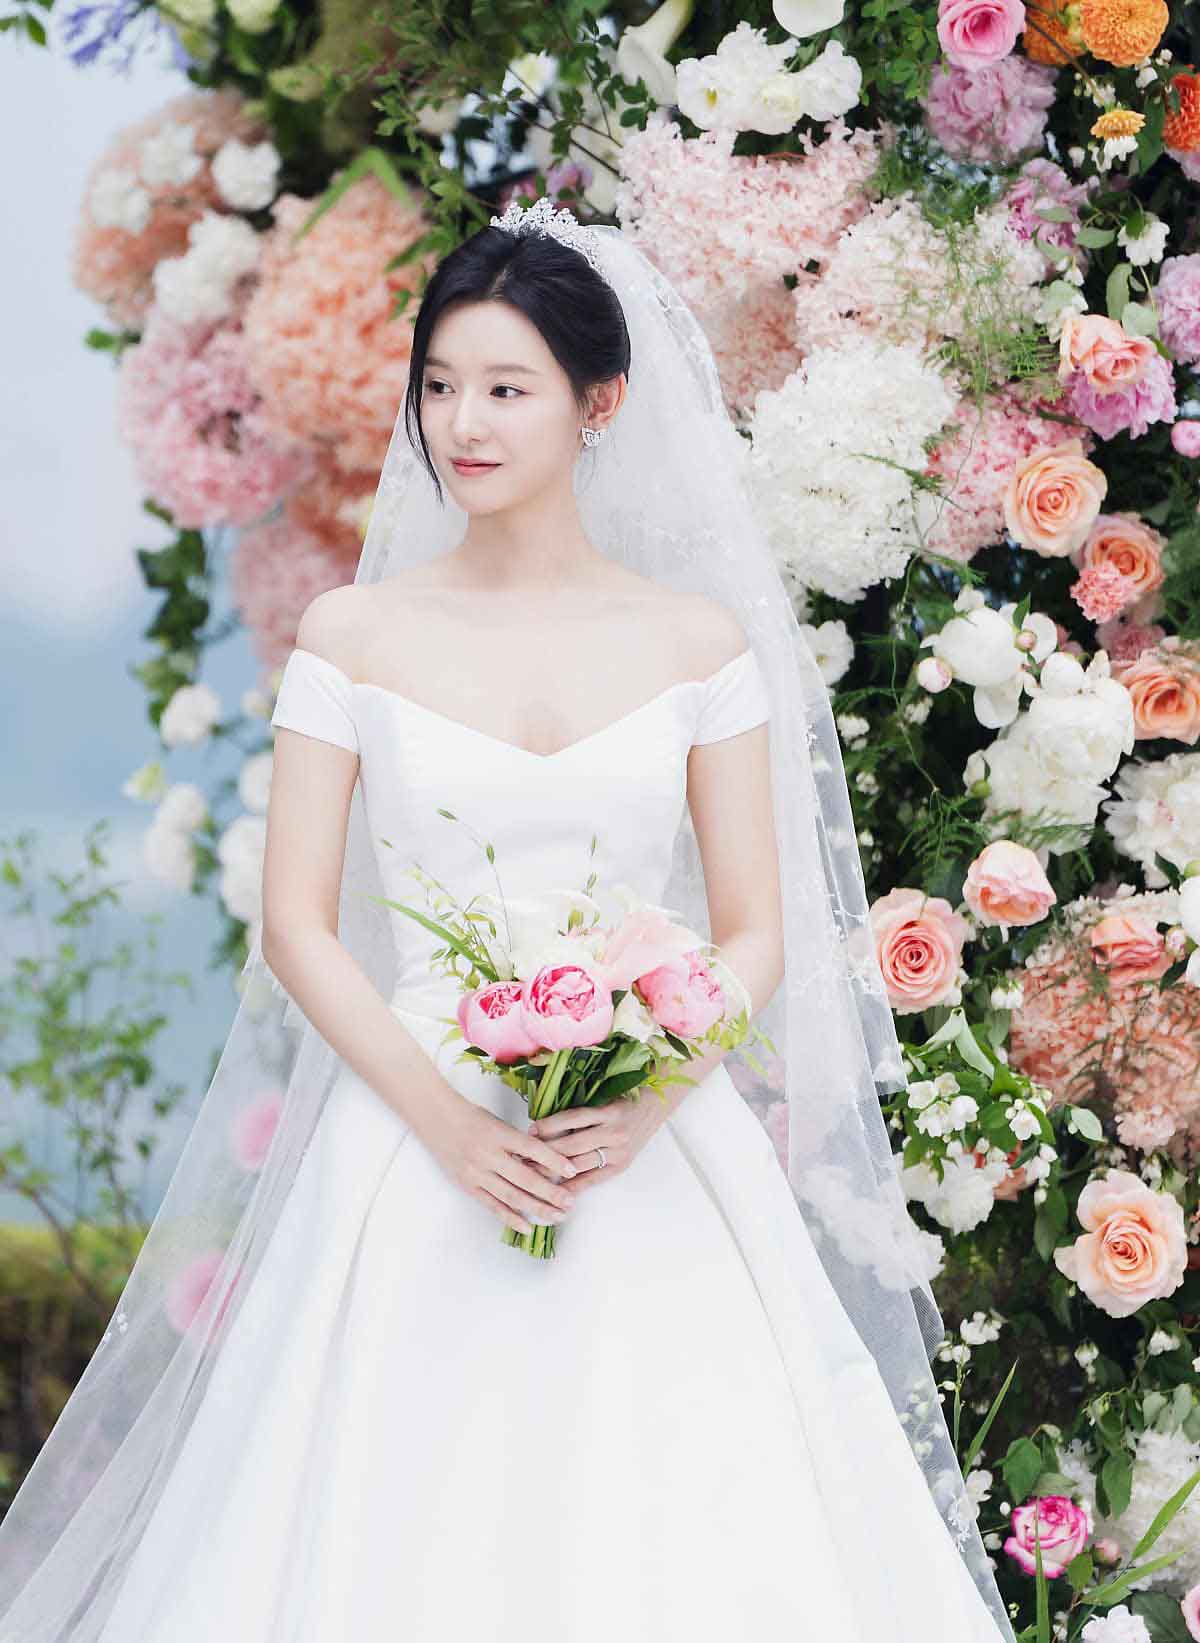 Trong phim “Nữ hoàng nước mắt“, Kim Ji Won nên duyên cùng Kim Soo Hyun. Cả hai được đánh giá là đẹp đôi, nhiều khán giả cũng tỏ ý ủng hộ nếu cả hai thành đôi thật ngoài đời. Trong phân cảnh hôn lễ, nữ chính Kim Ji Won khiến nhiều người trầm trồ bởi nhan sắc xinh đẹp và yêu kiều. Ảnh: Instagram. 